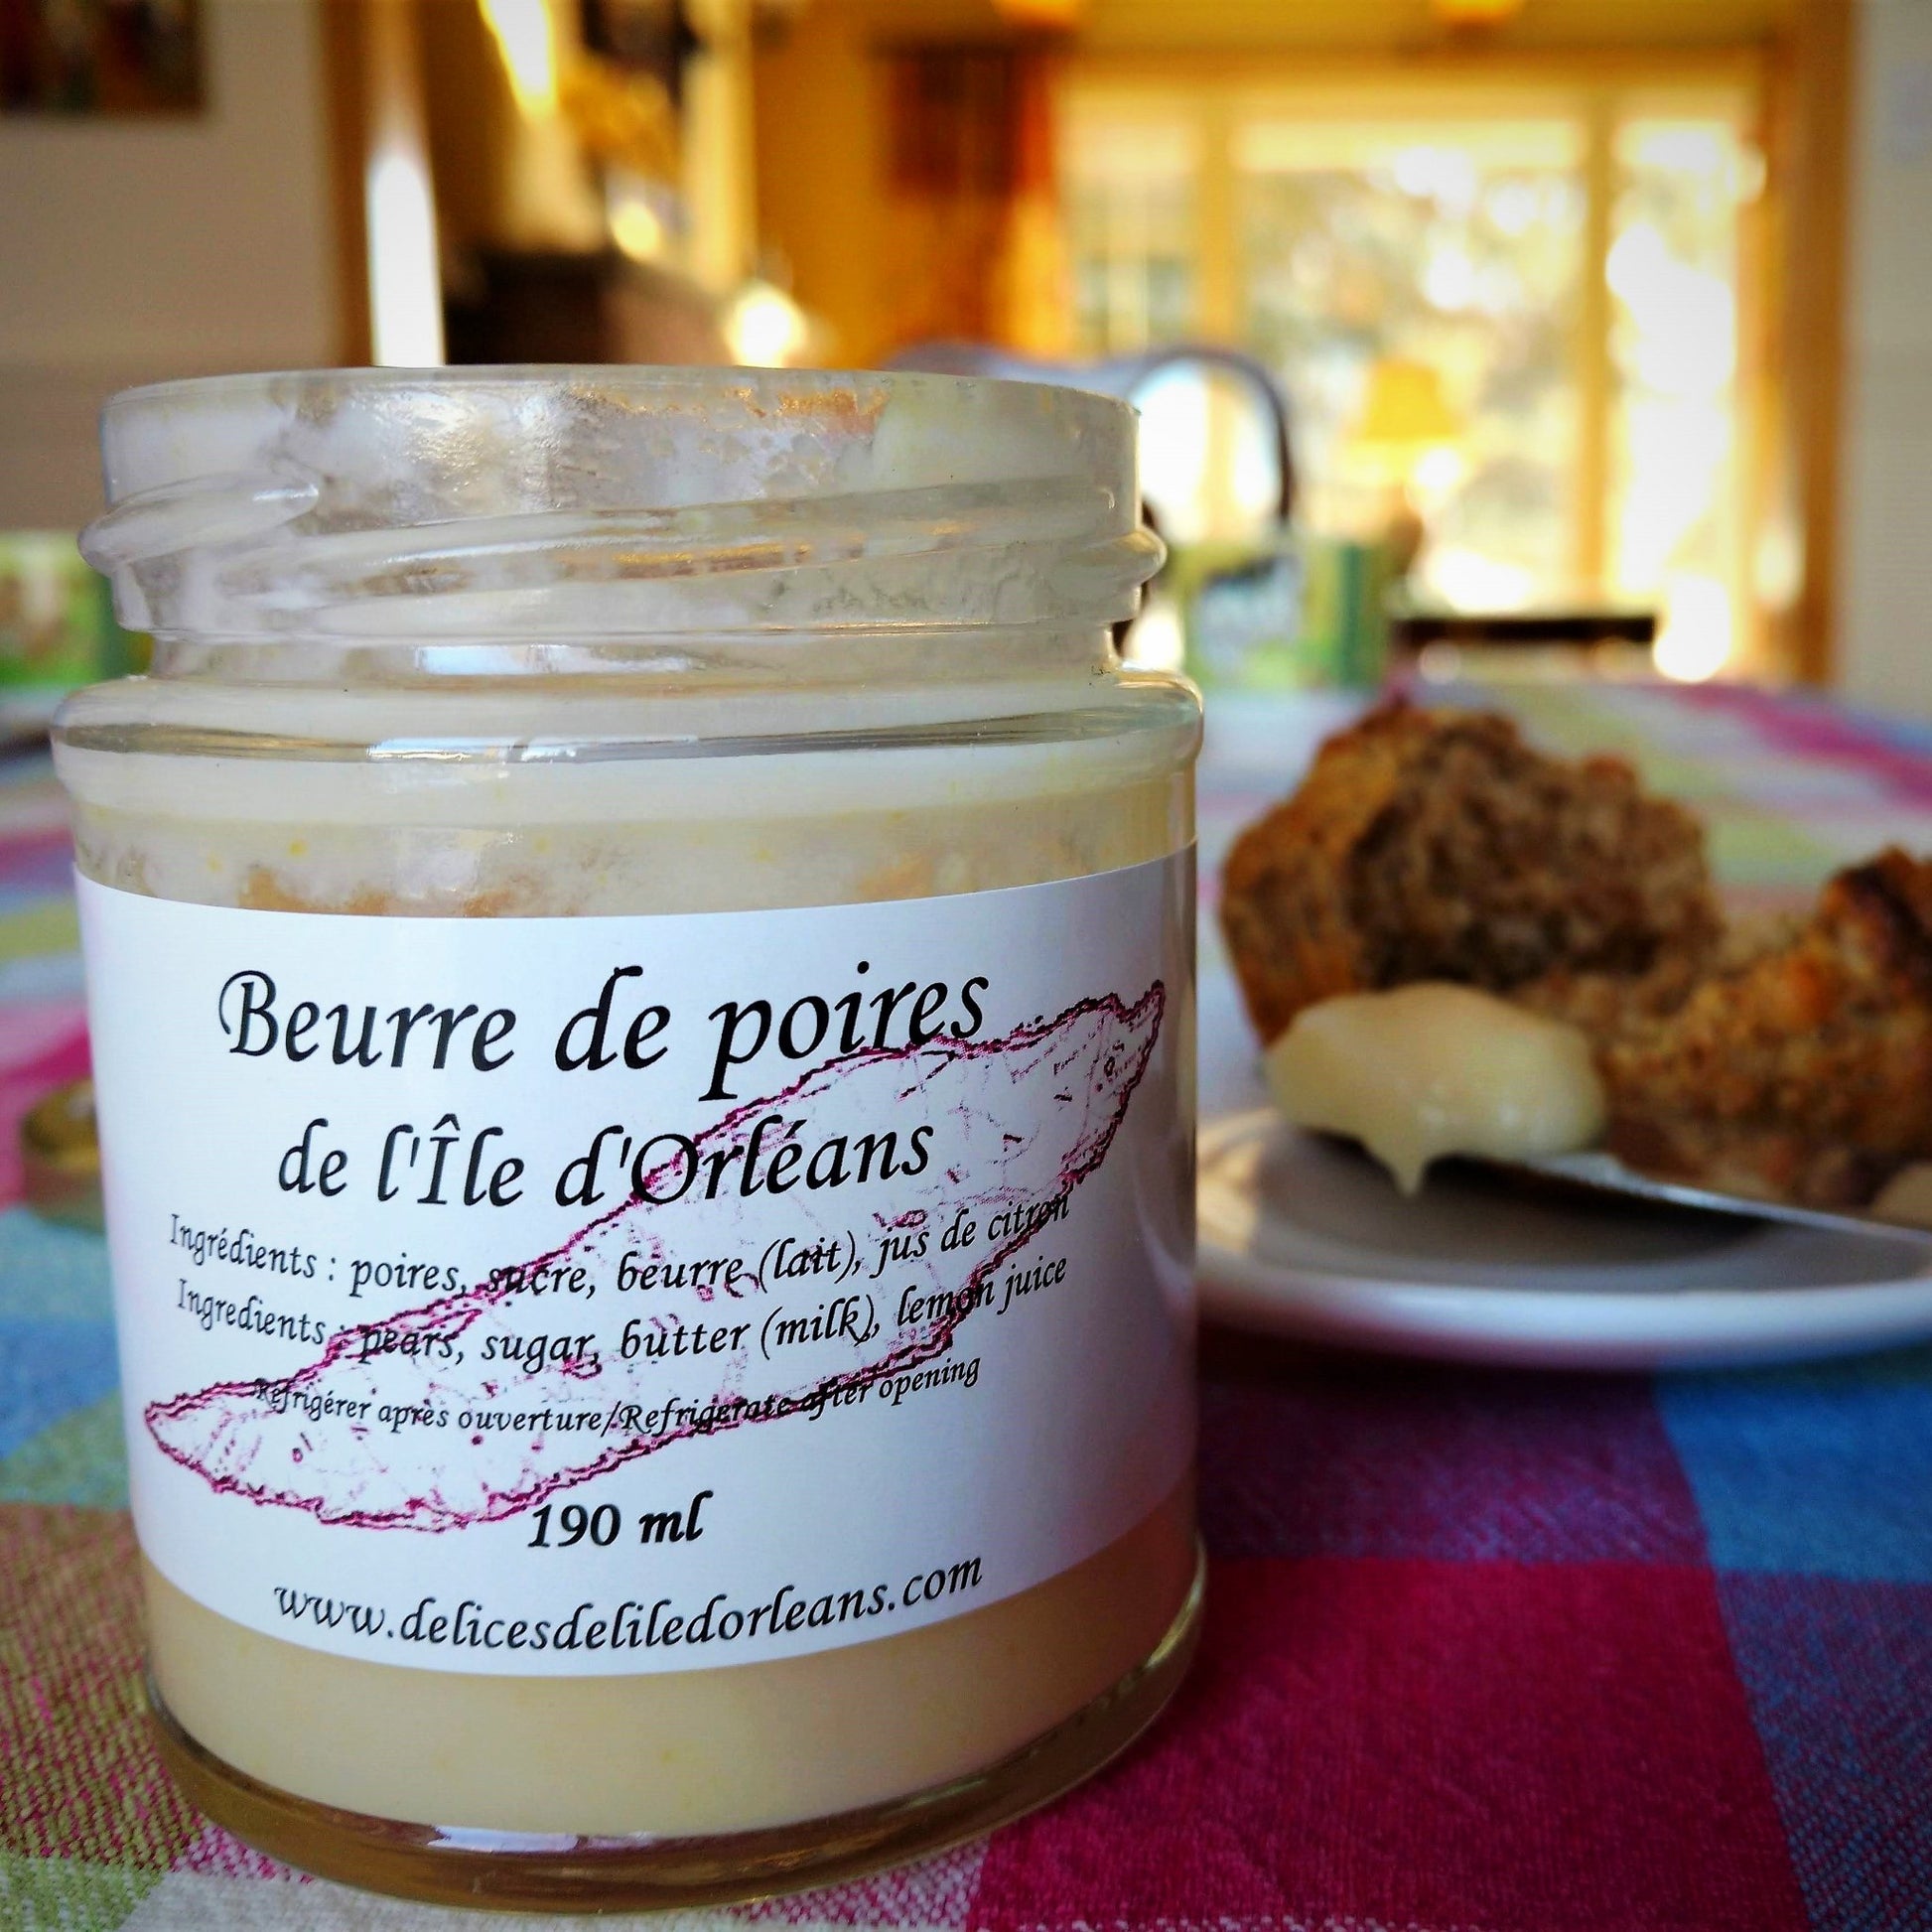 Beurre de poires de l'Île d'Orléans